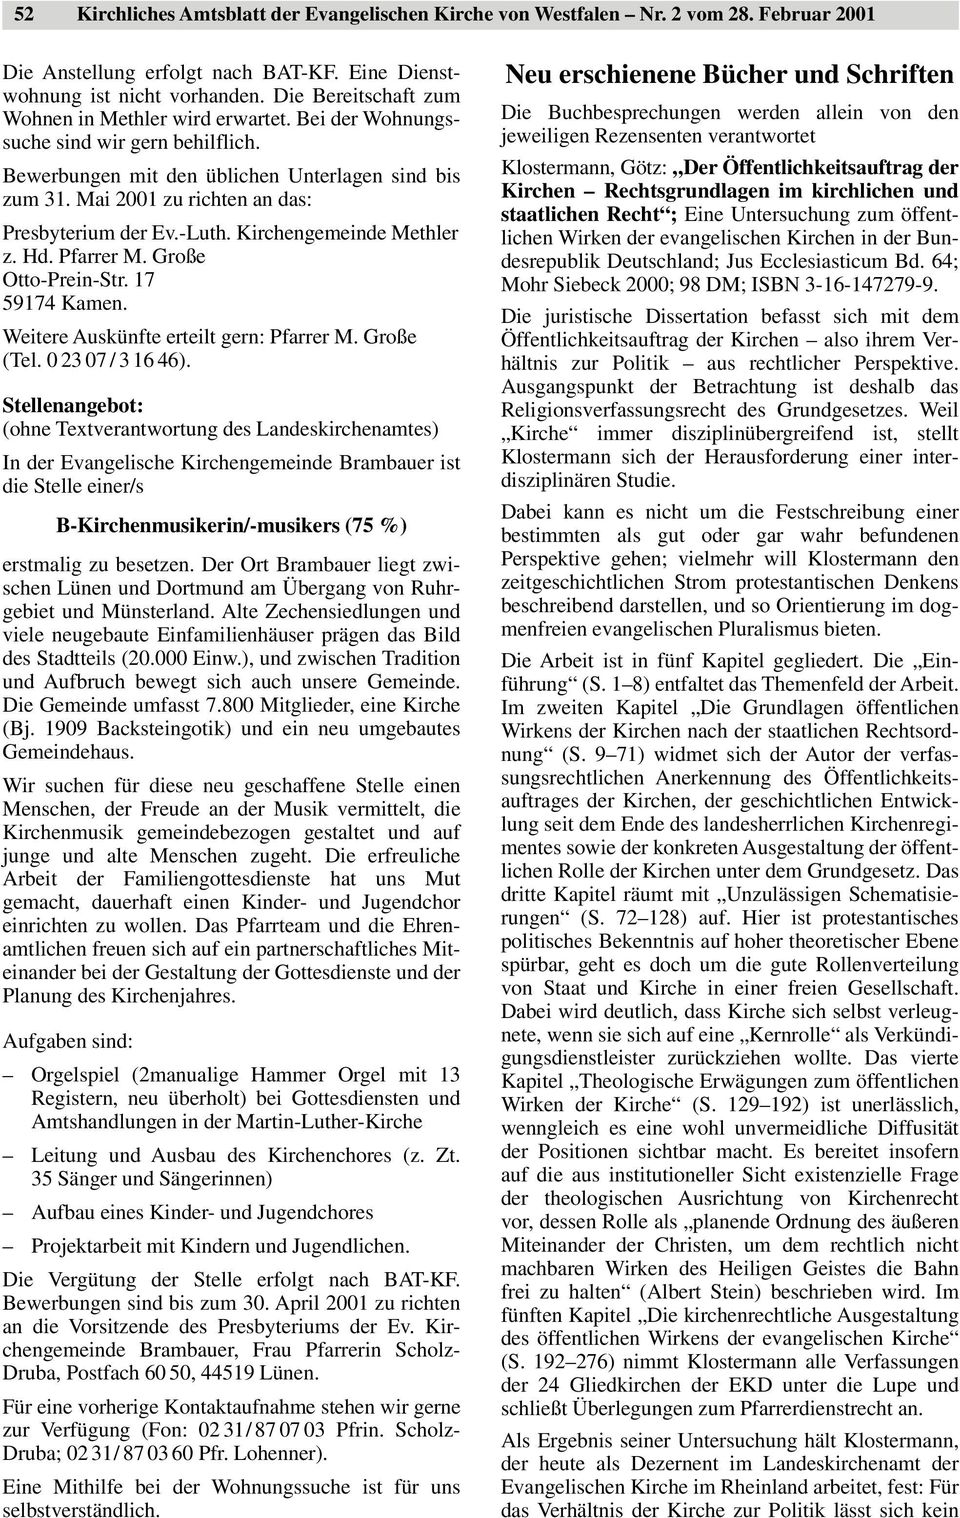 Mai 2001 zu richten an das: Presbyterium der Ev.-Luth. Kirchengemeinde Methler z. Hd. Pfarrer M. Große Otto-Prein-Str. 17 59174 Kamen. Weitere Auskünfte erteilt gern: Pfarrer M. Große (Tel.